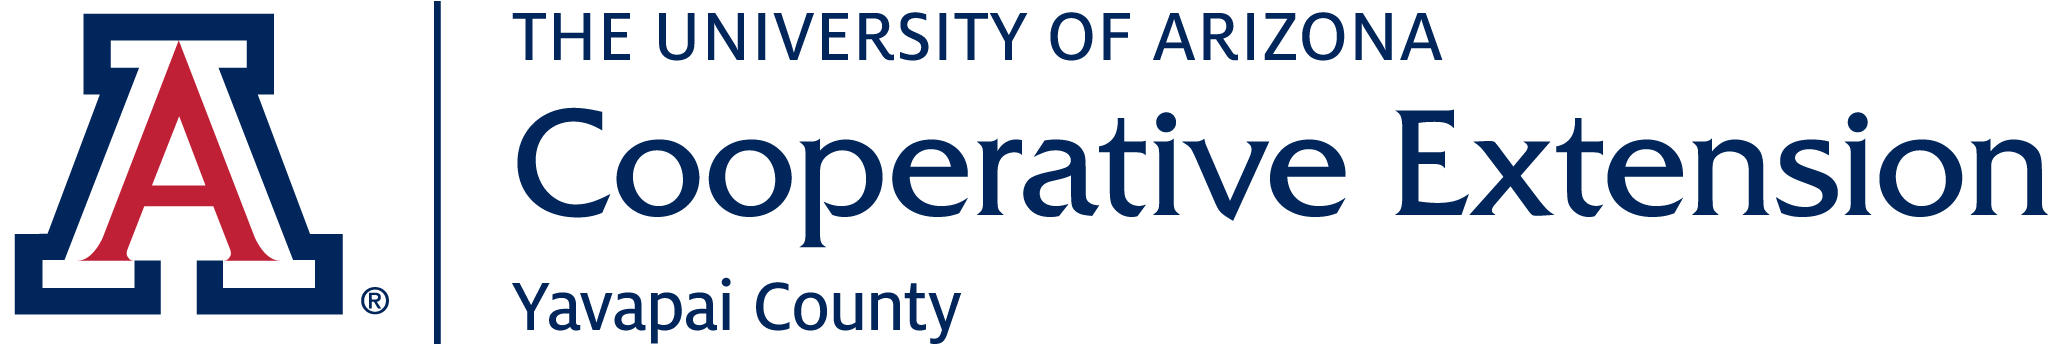 University of Arizona Cooperative Extension